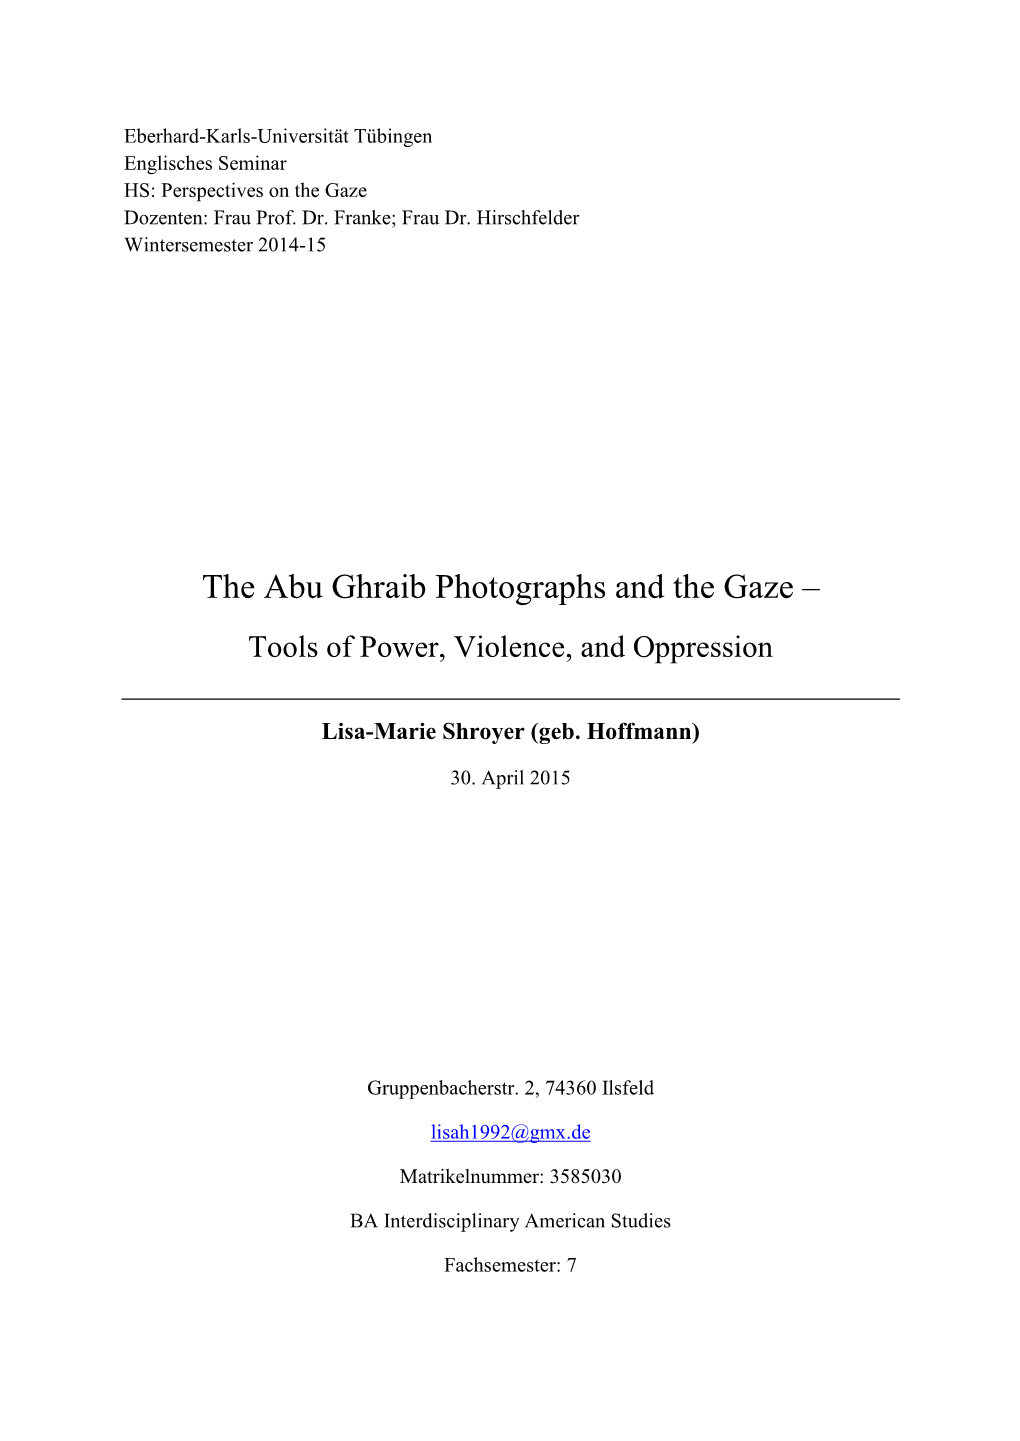 The Abu Ghraib Photographs and the Gaze –